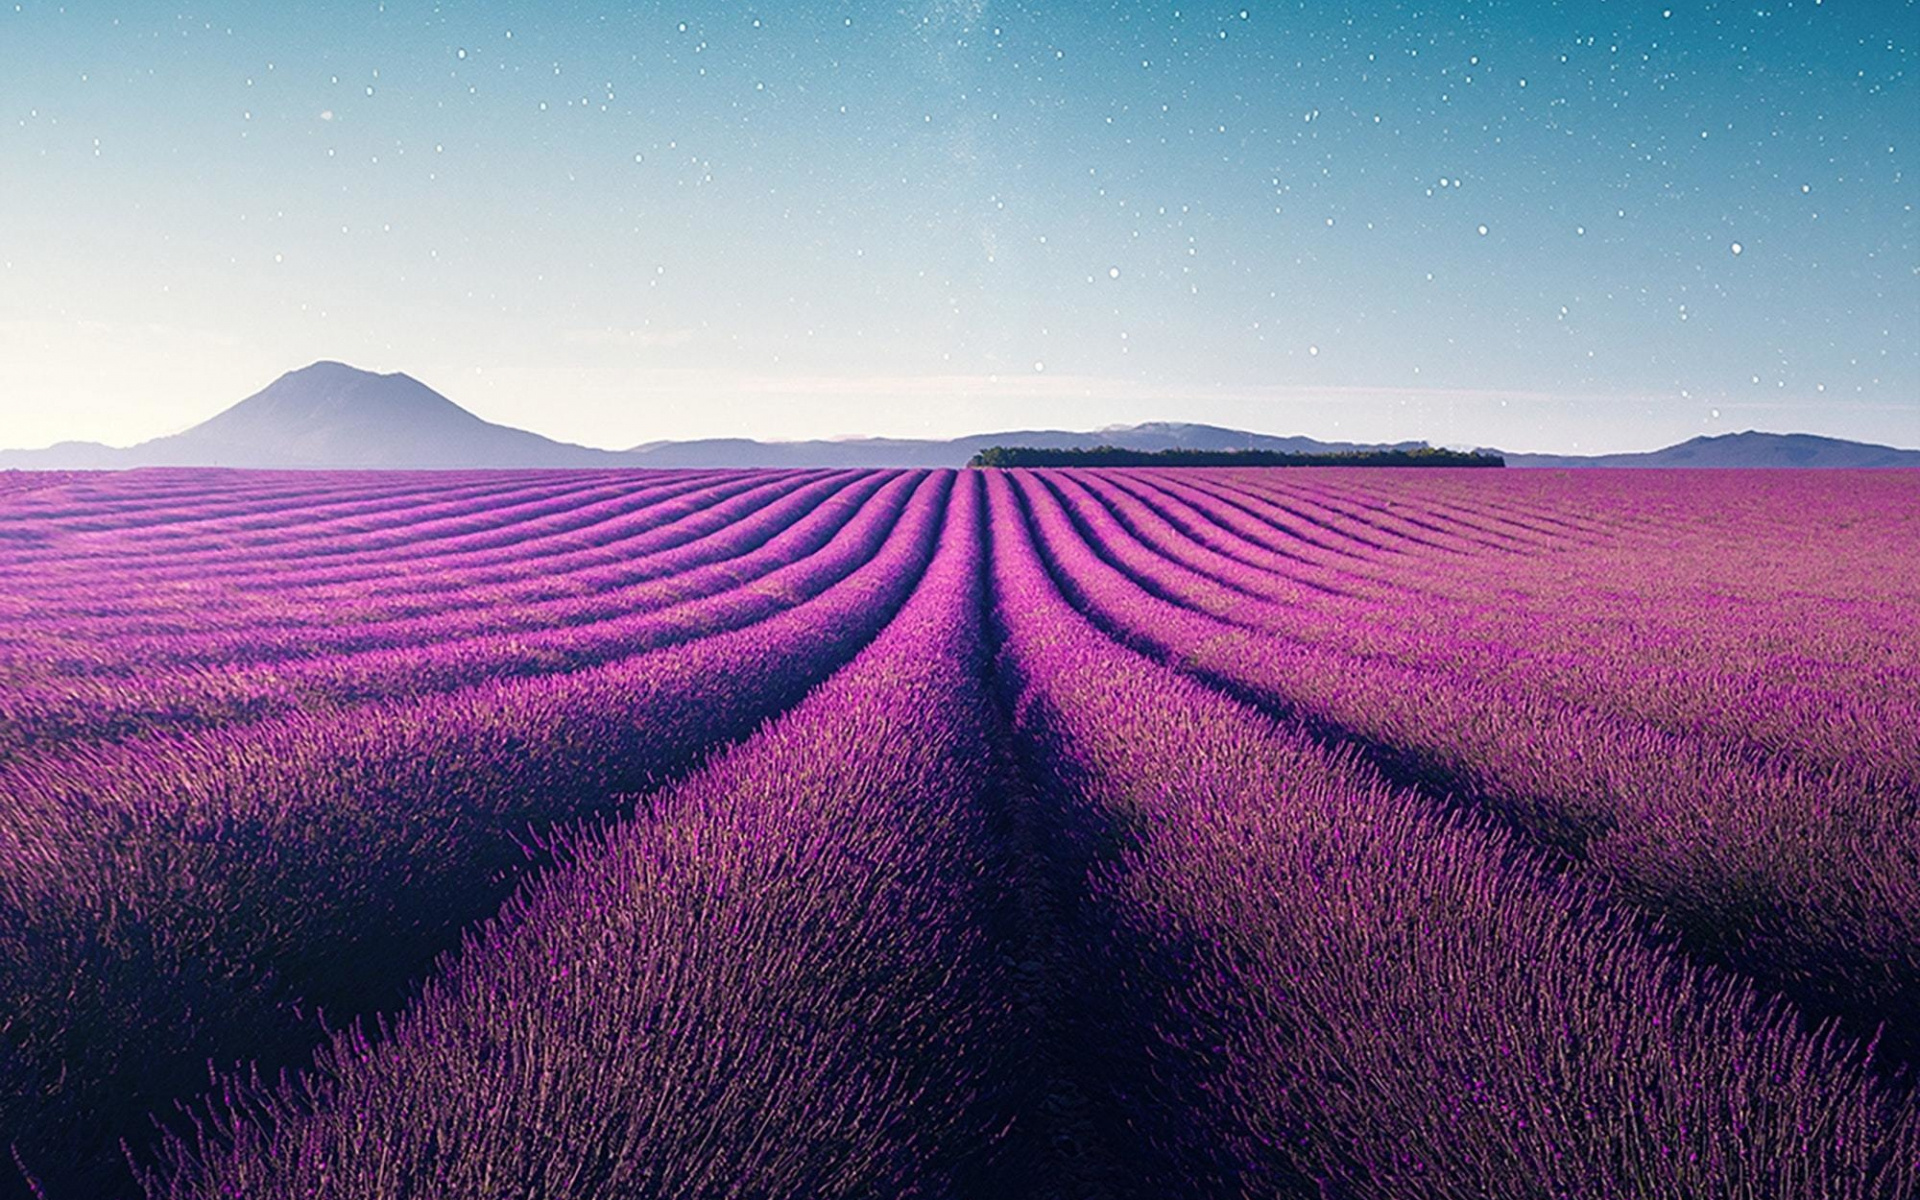 Farm violet flowers landscape, Lavender nature wallpaper, Widescreen HD image, 1920x1200 HD Desktop